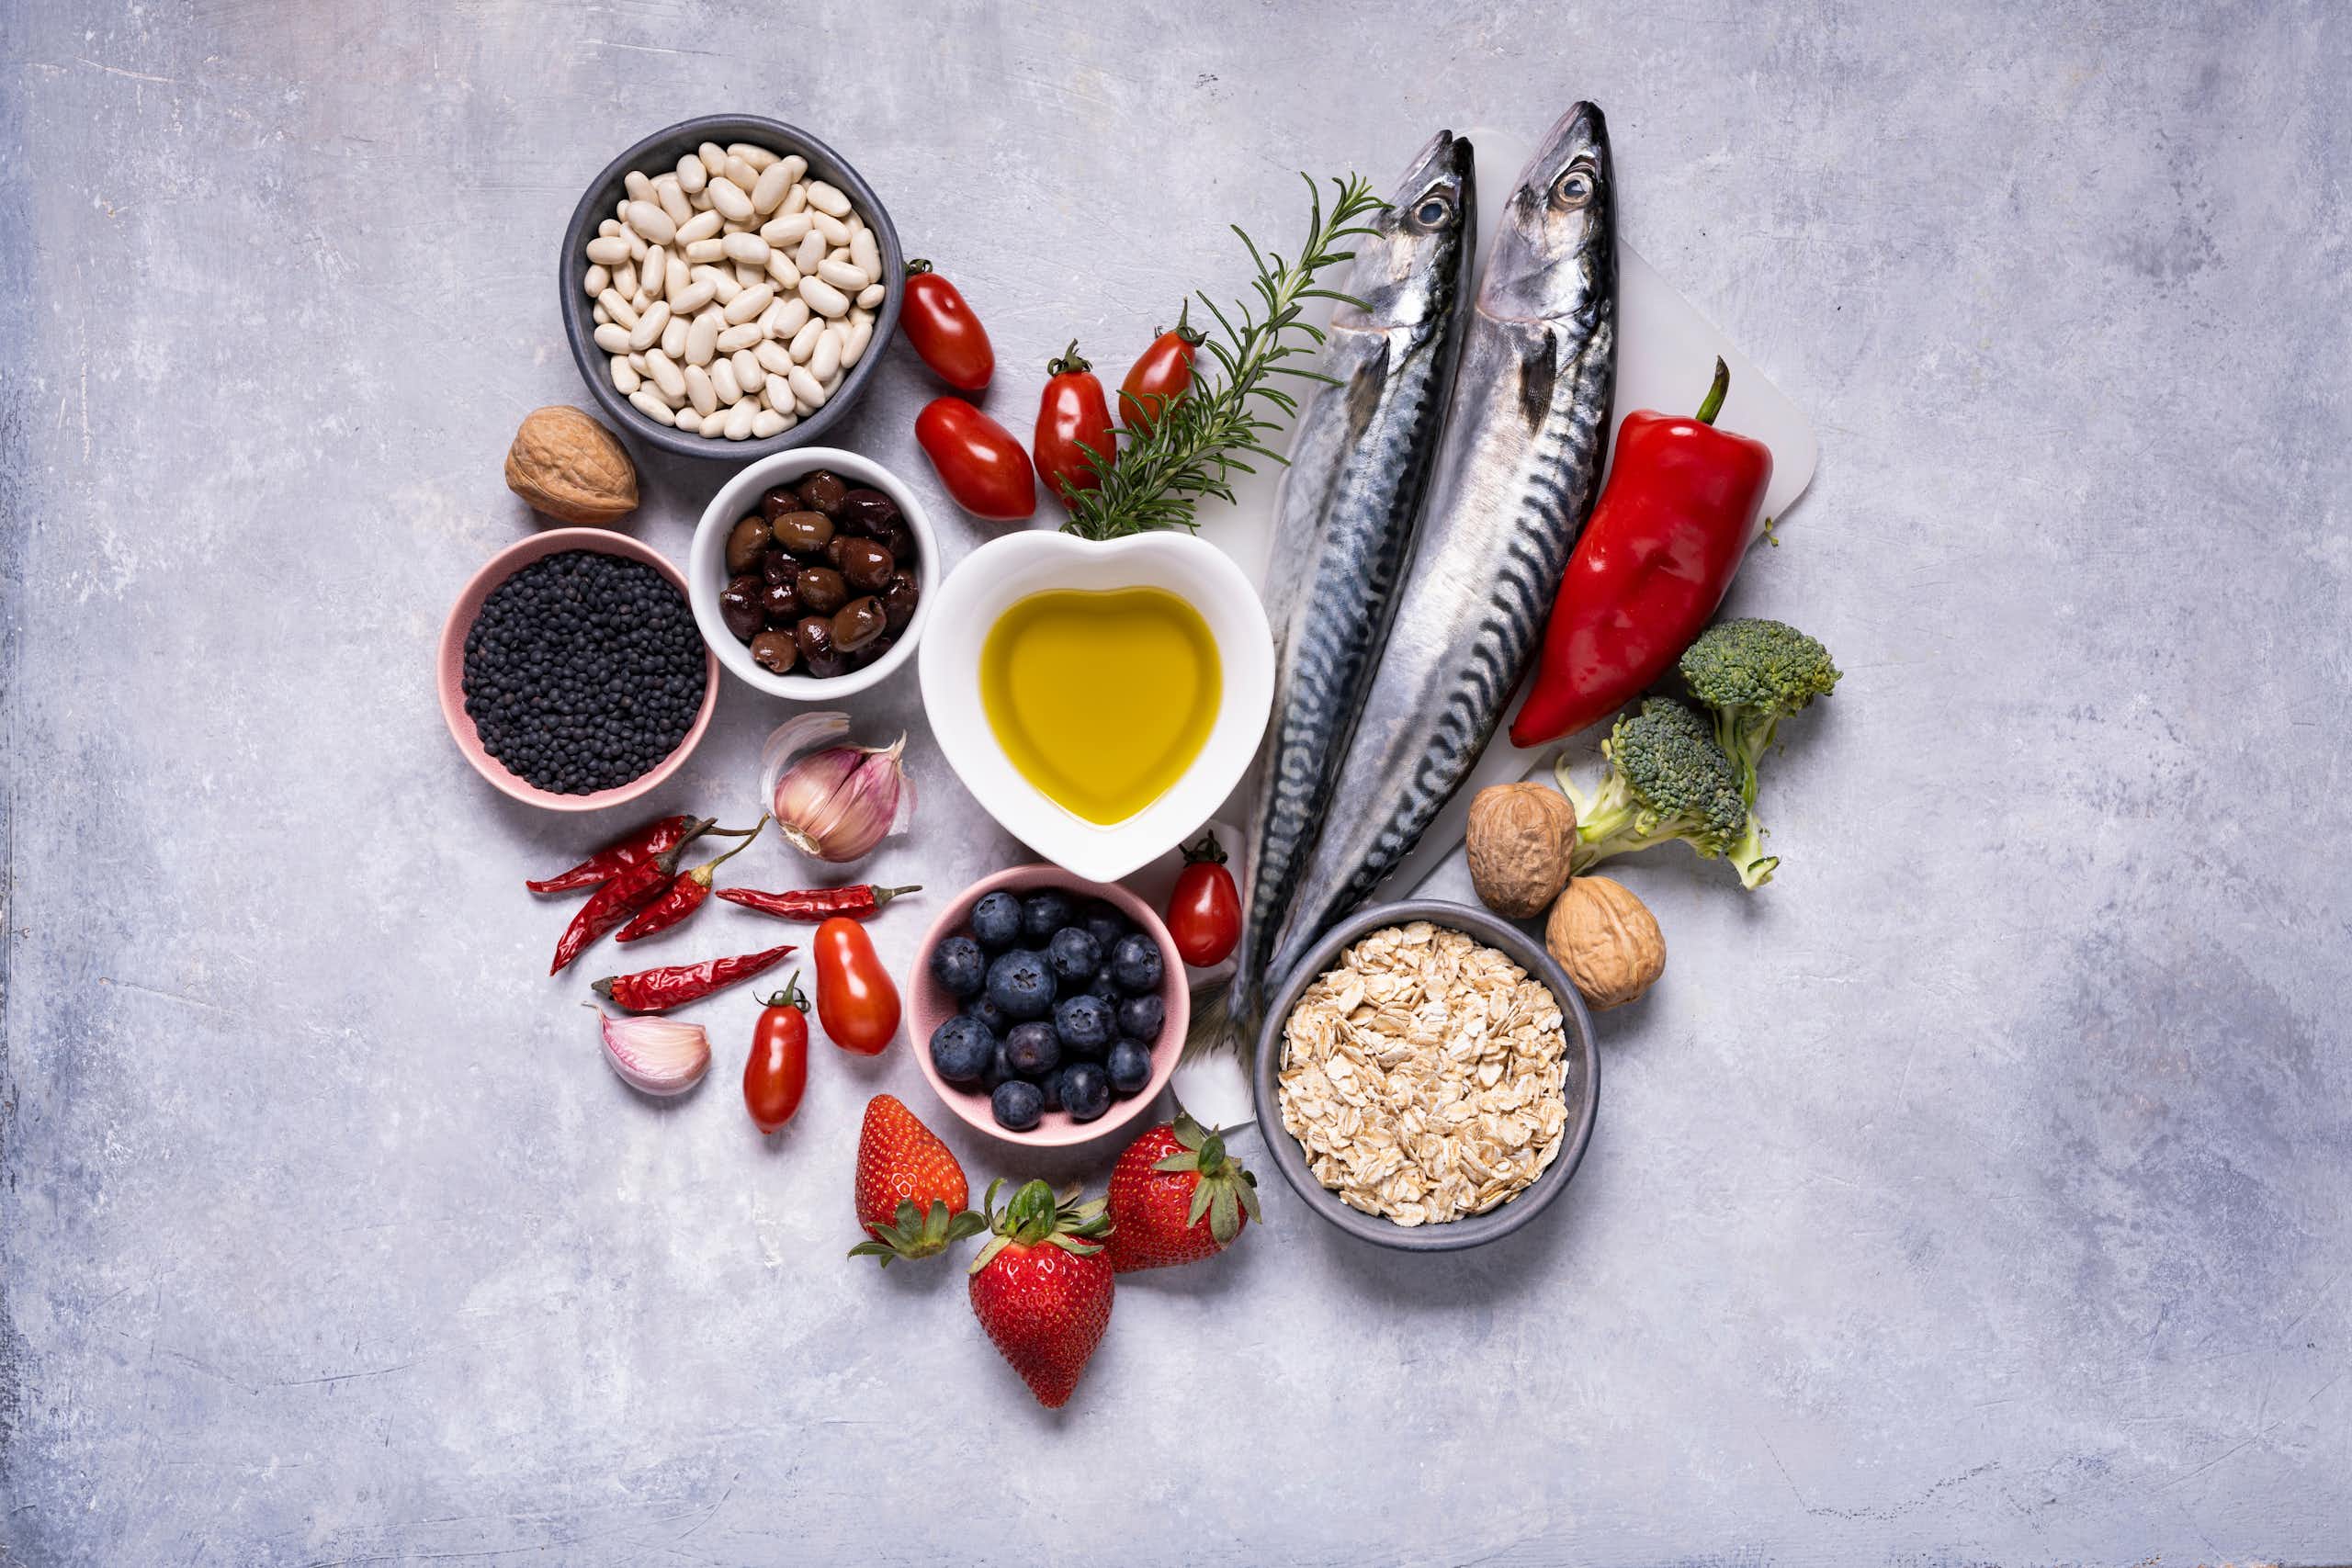 Une composition en fome de coeur est constituée d'aliments crus comme du poisson, des haricots secs et autres graines, des légumes (poivrons, brocolis..), de l'ail, des fraises et de l'huile d'olive.